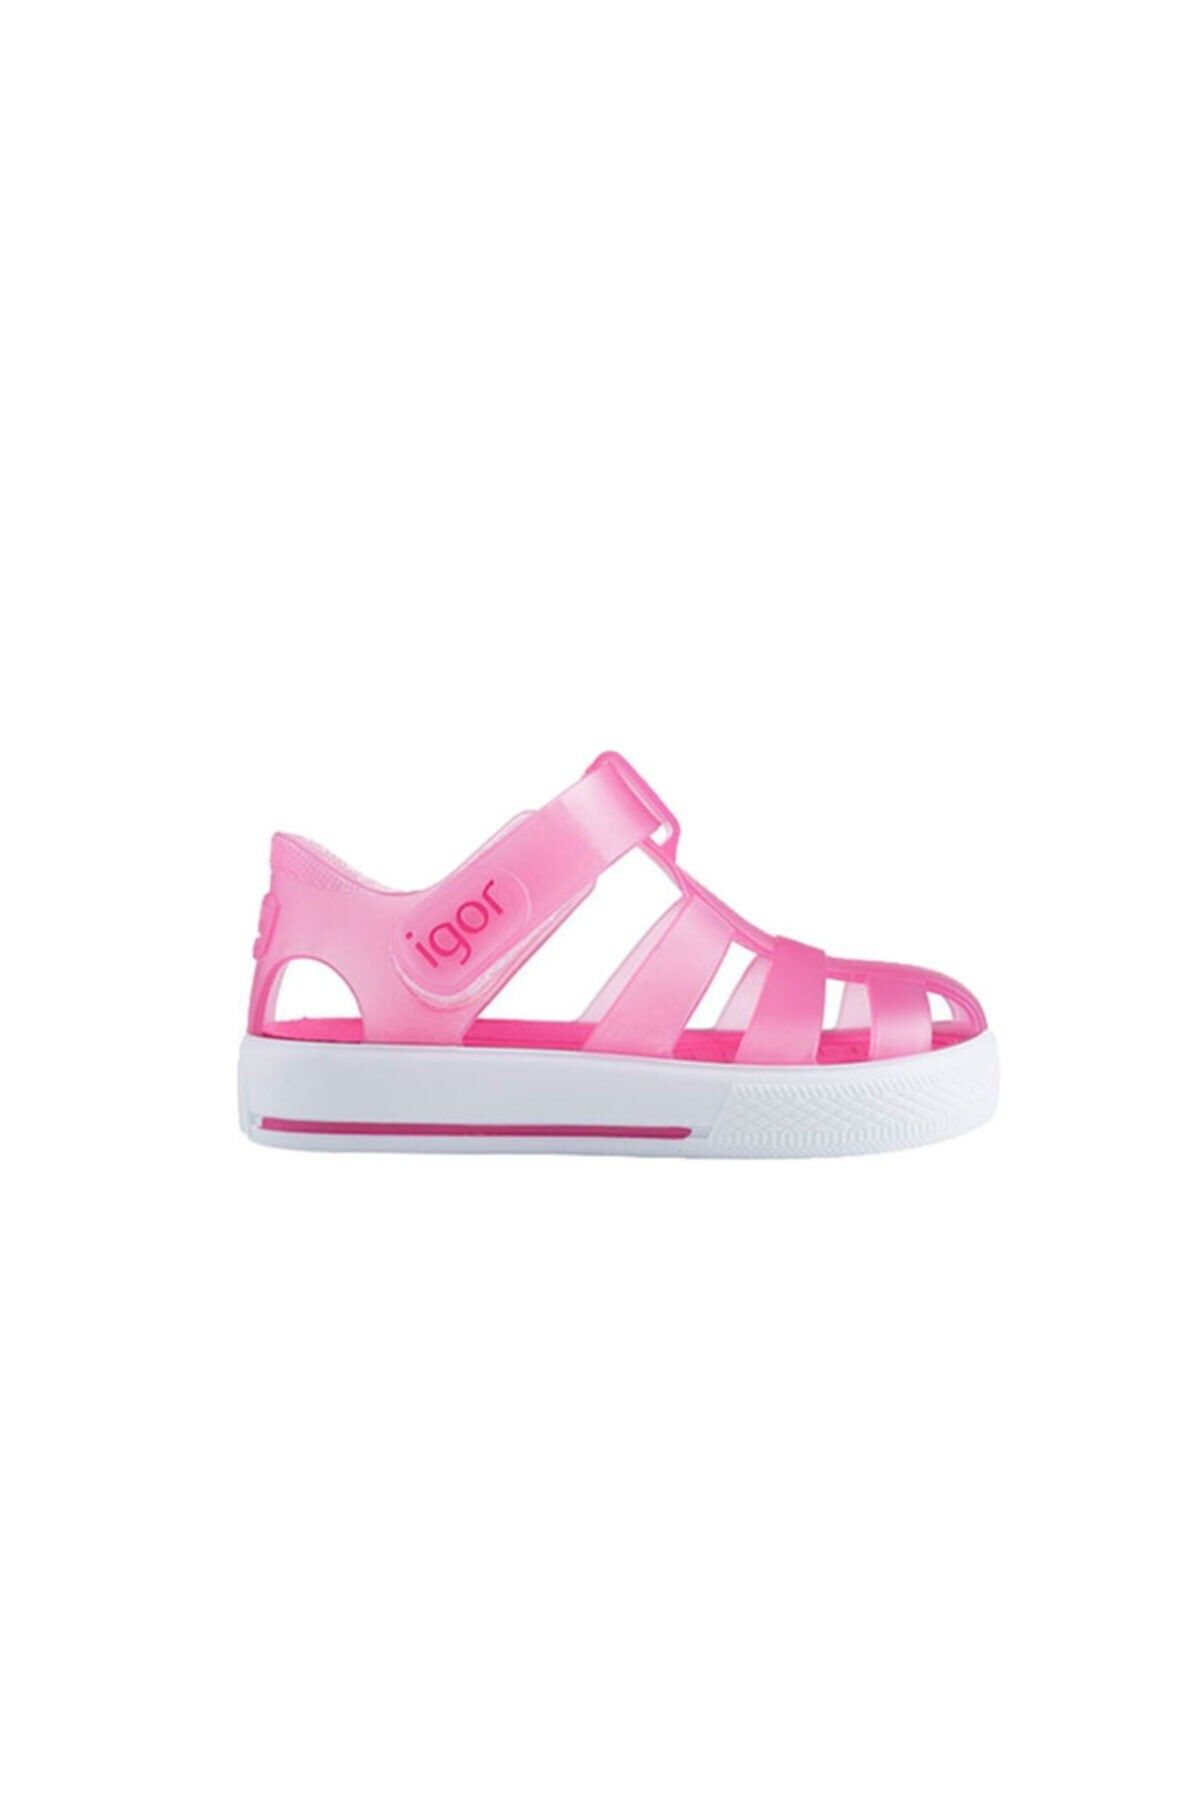 IGOR Star Çocuk Sandalet Ayakkabı S10171-046fucsia